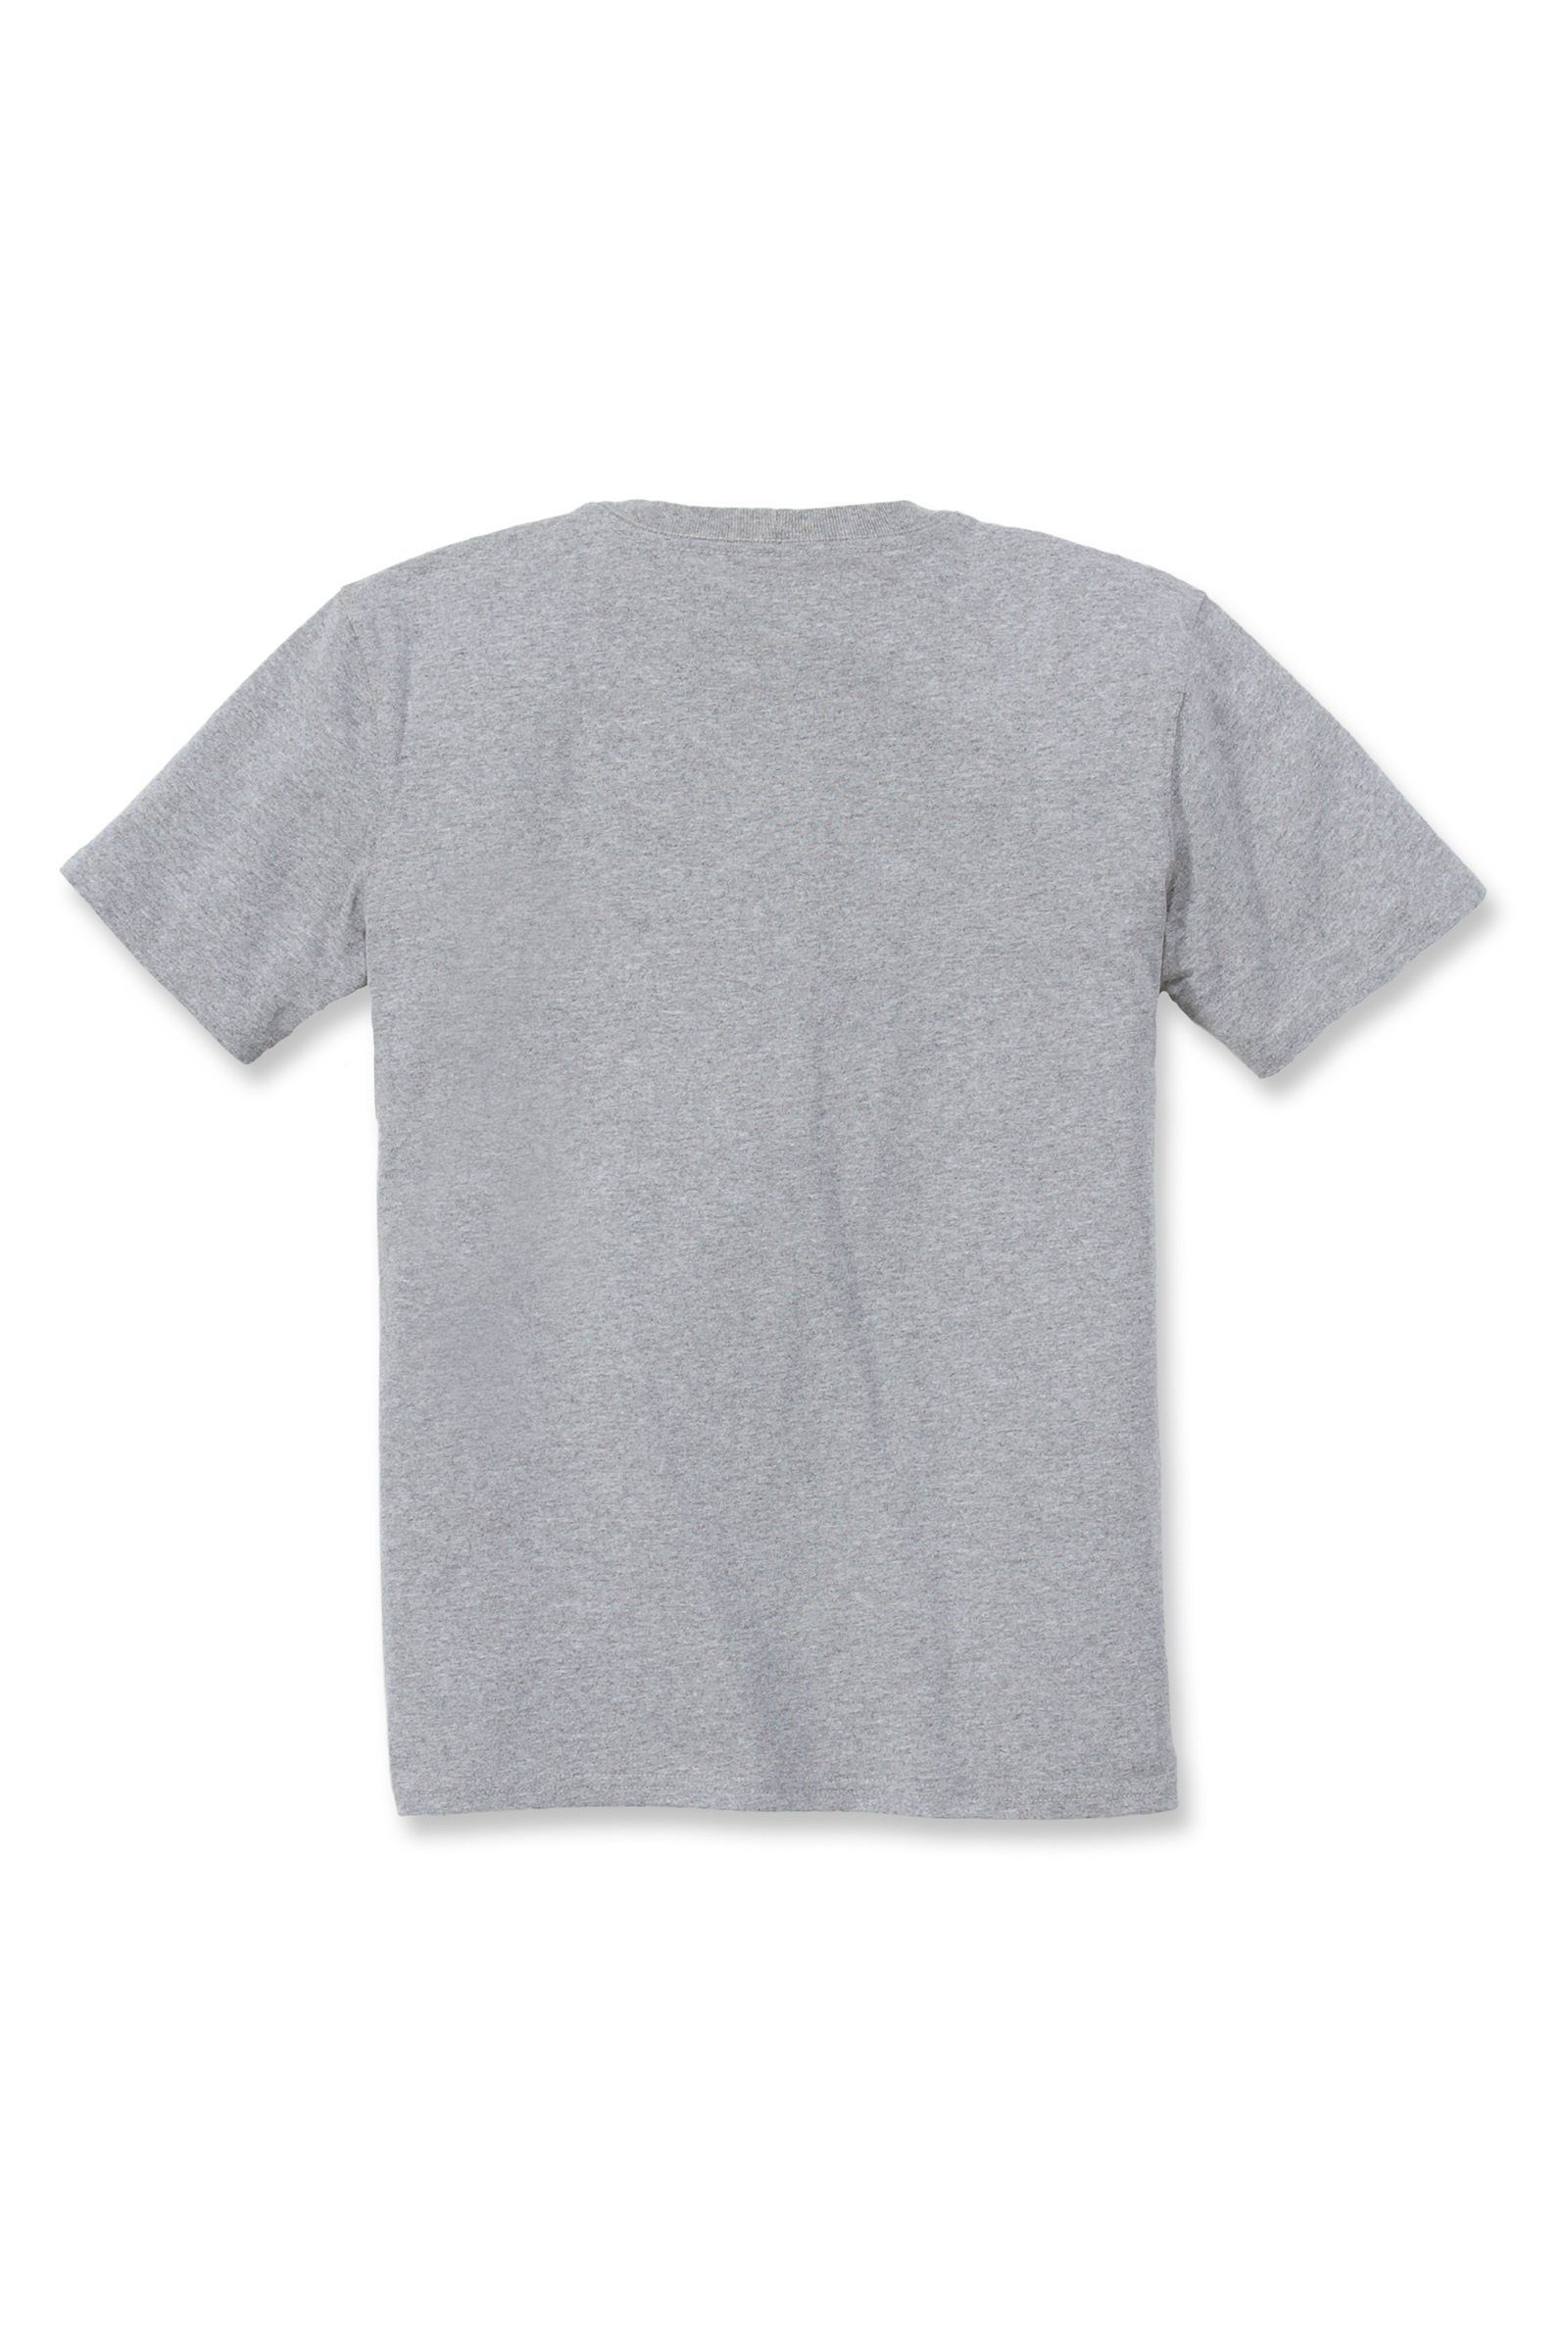 grey Fit Heavyweight Pocket Damen Adult heather Carhartt Short-Sleeve Loose Carhartt T-Shirt T-Shirt